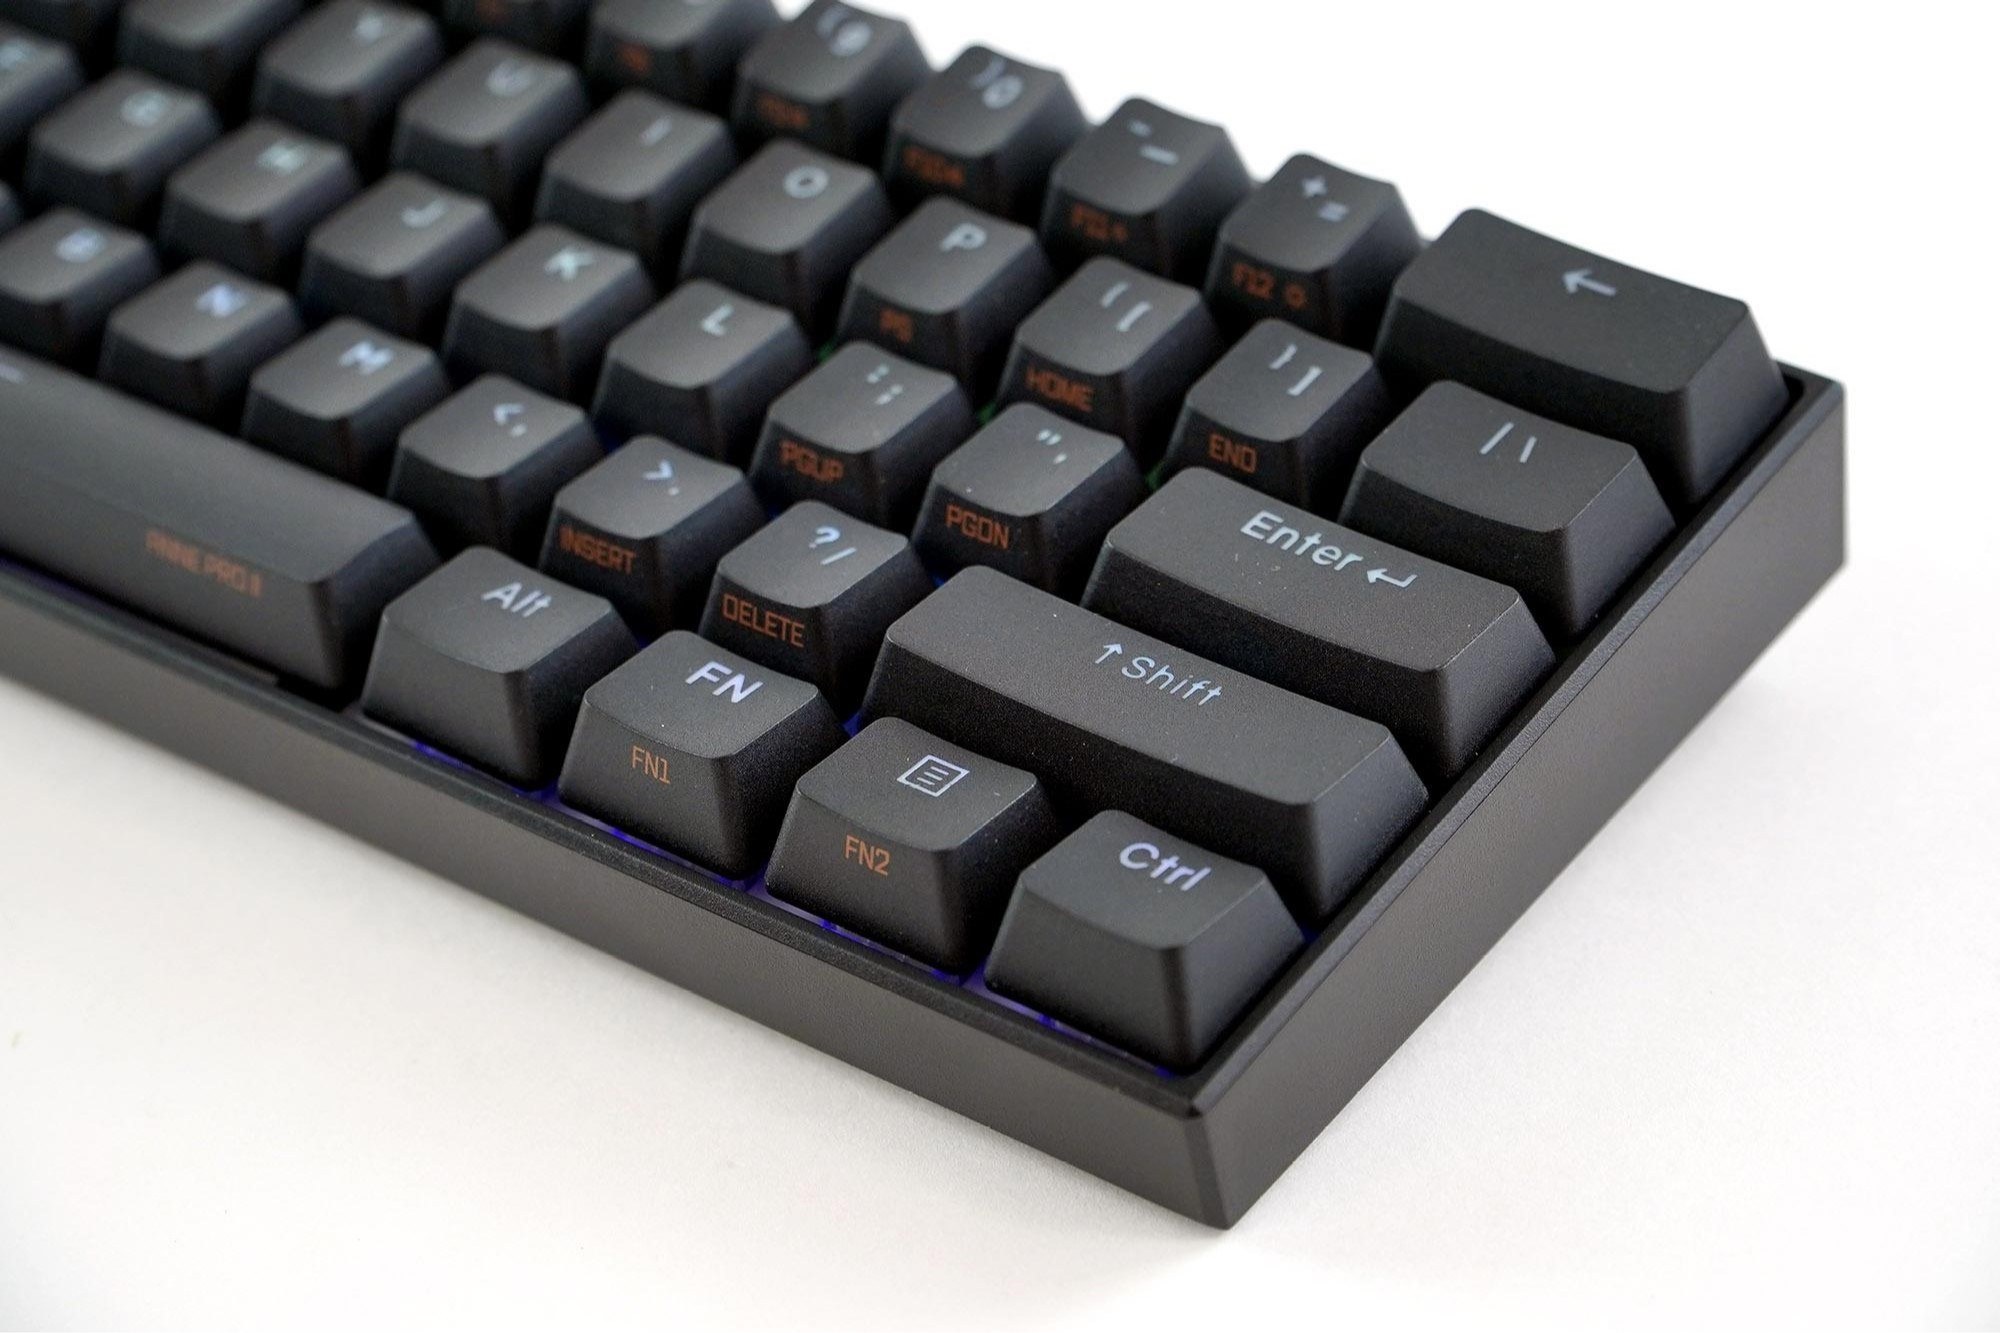 teclado mini gamer 60 porciento mecanico inalambrico barato